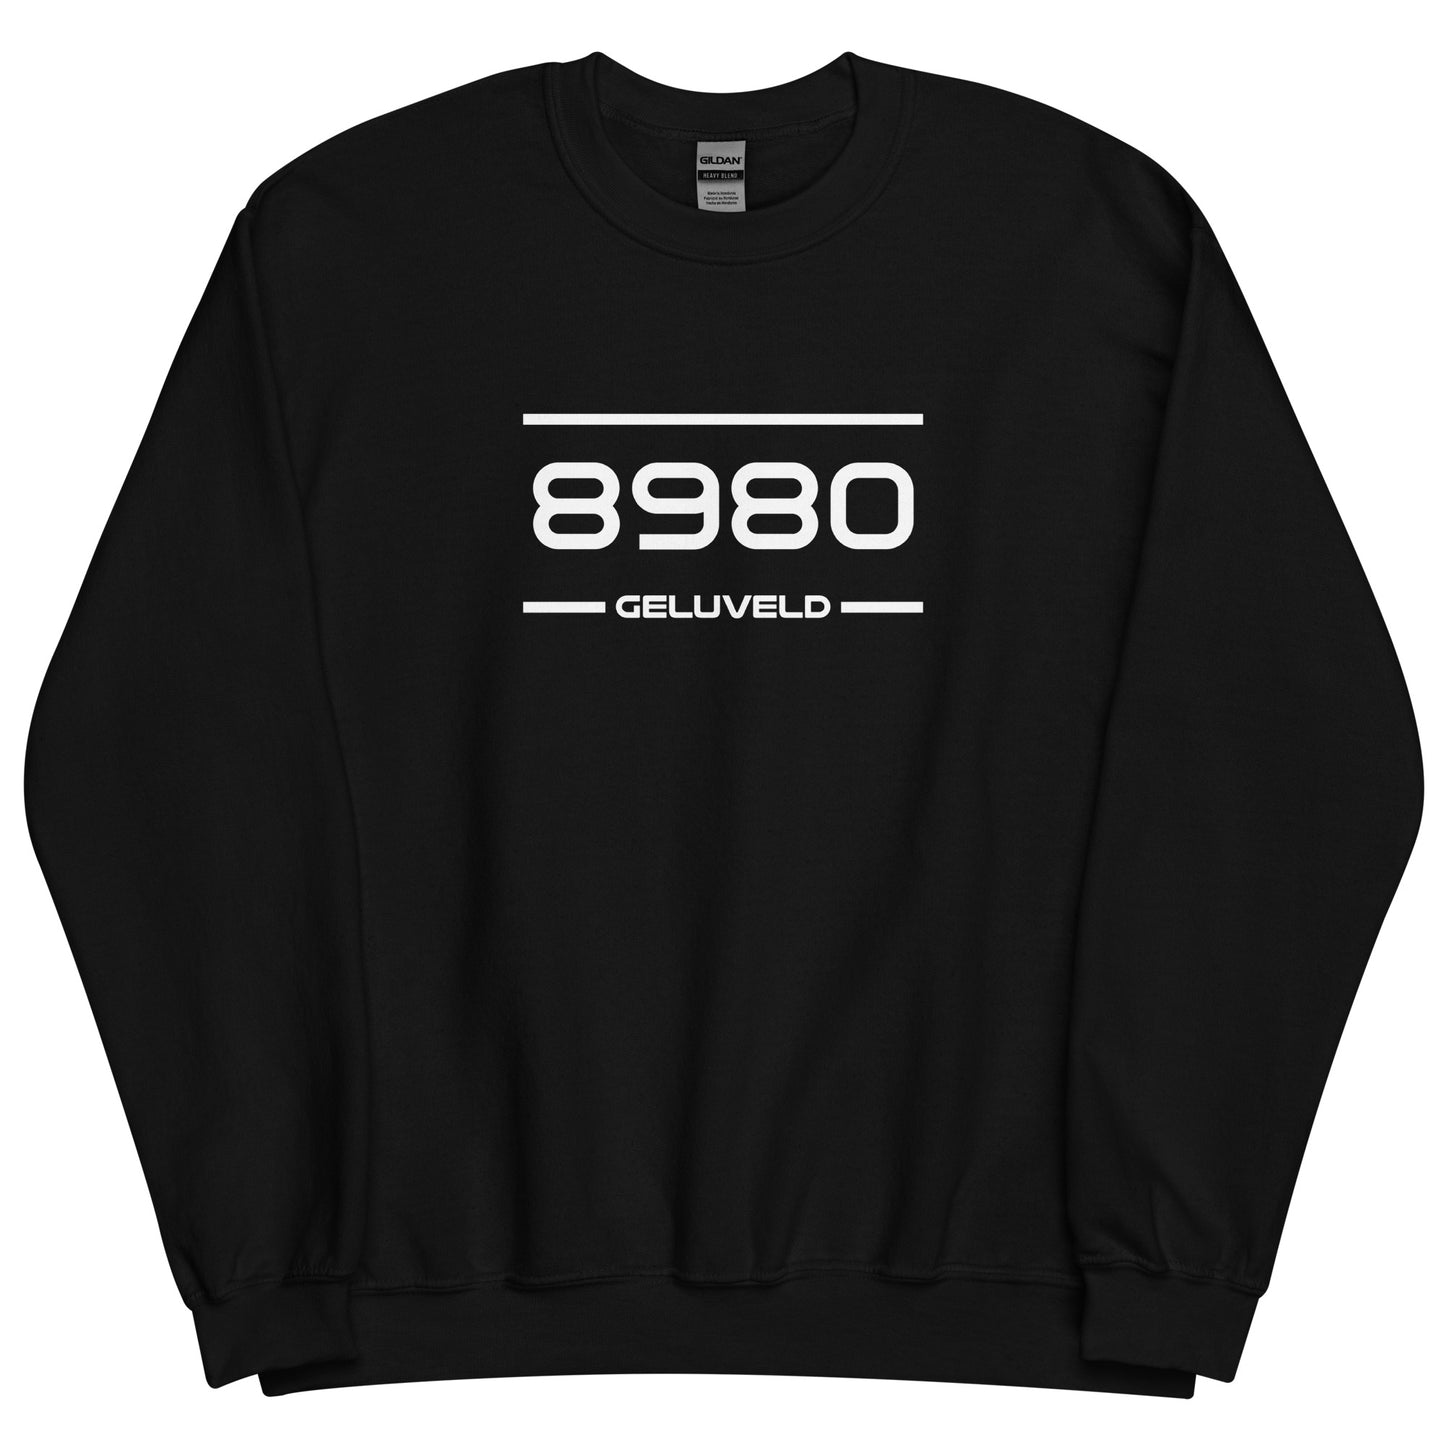 Sweater - 8980 - Geluveld (M/V)